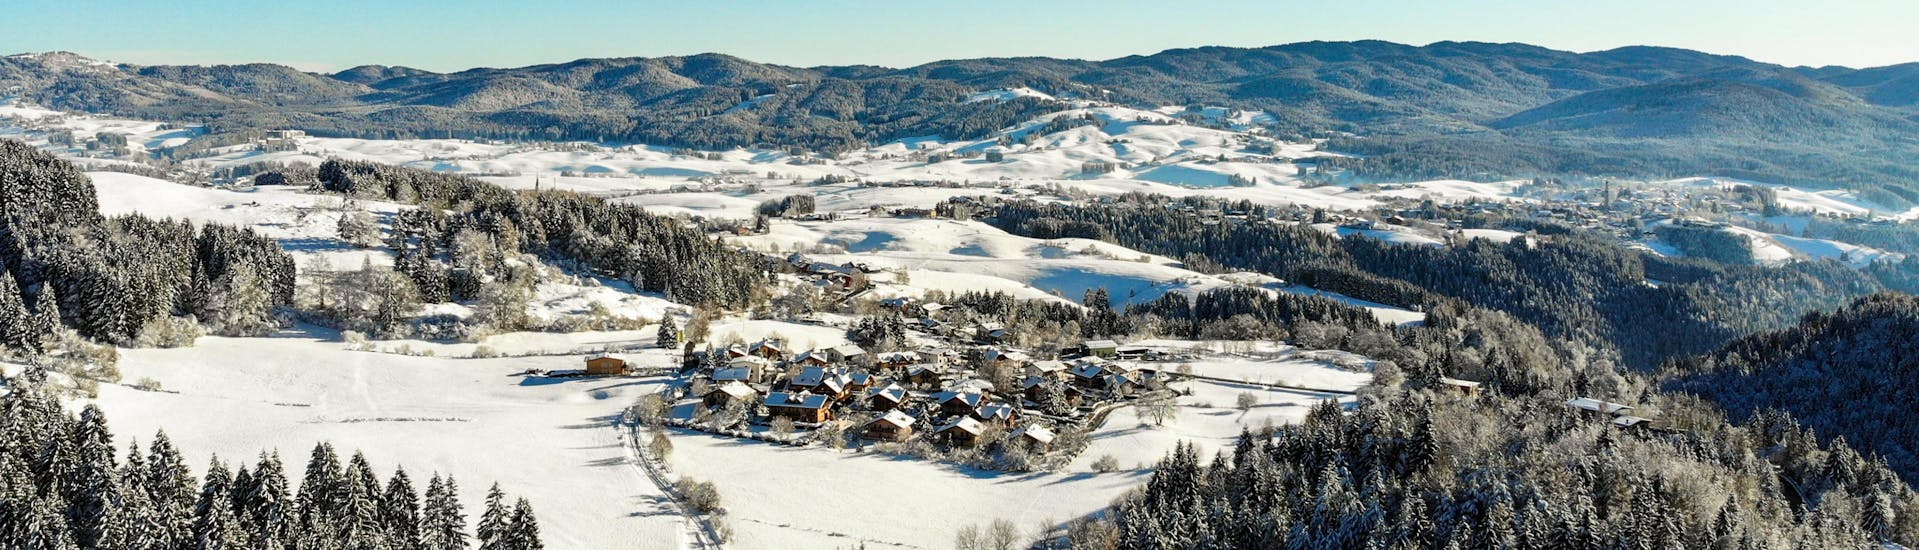 Vista di un villaggio sciistico in Altopiano durante la stagione invernale dove le scuole di sci danno lezioni di sci.